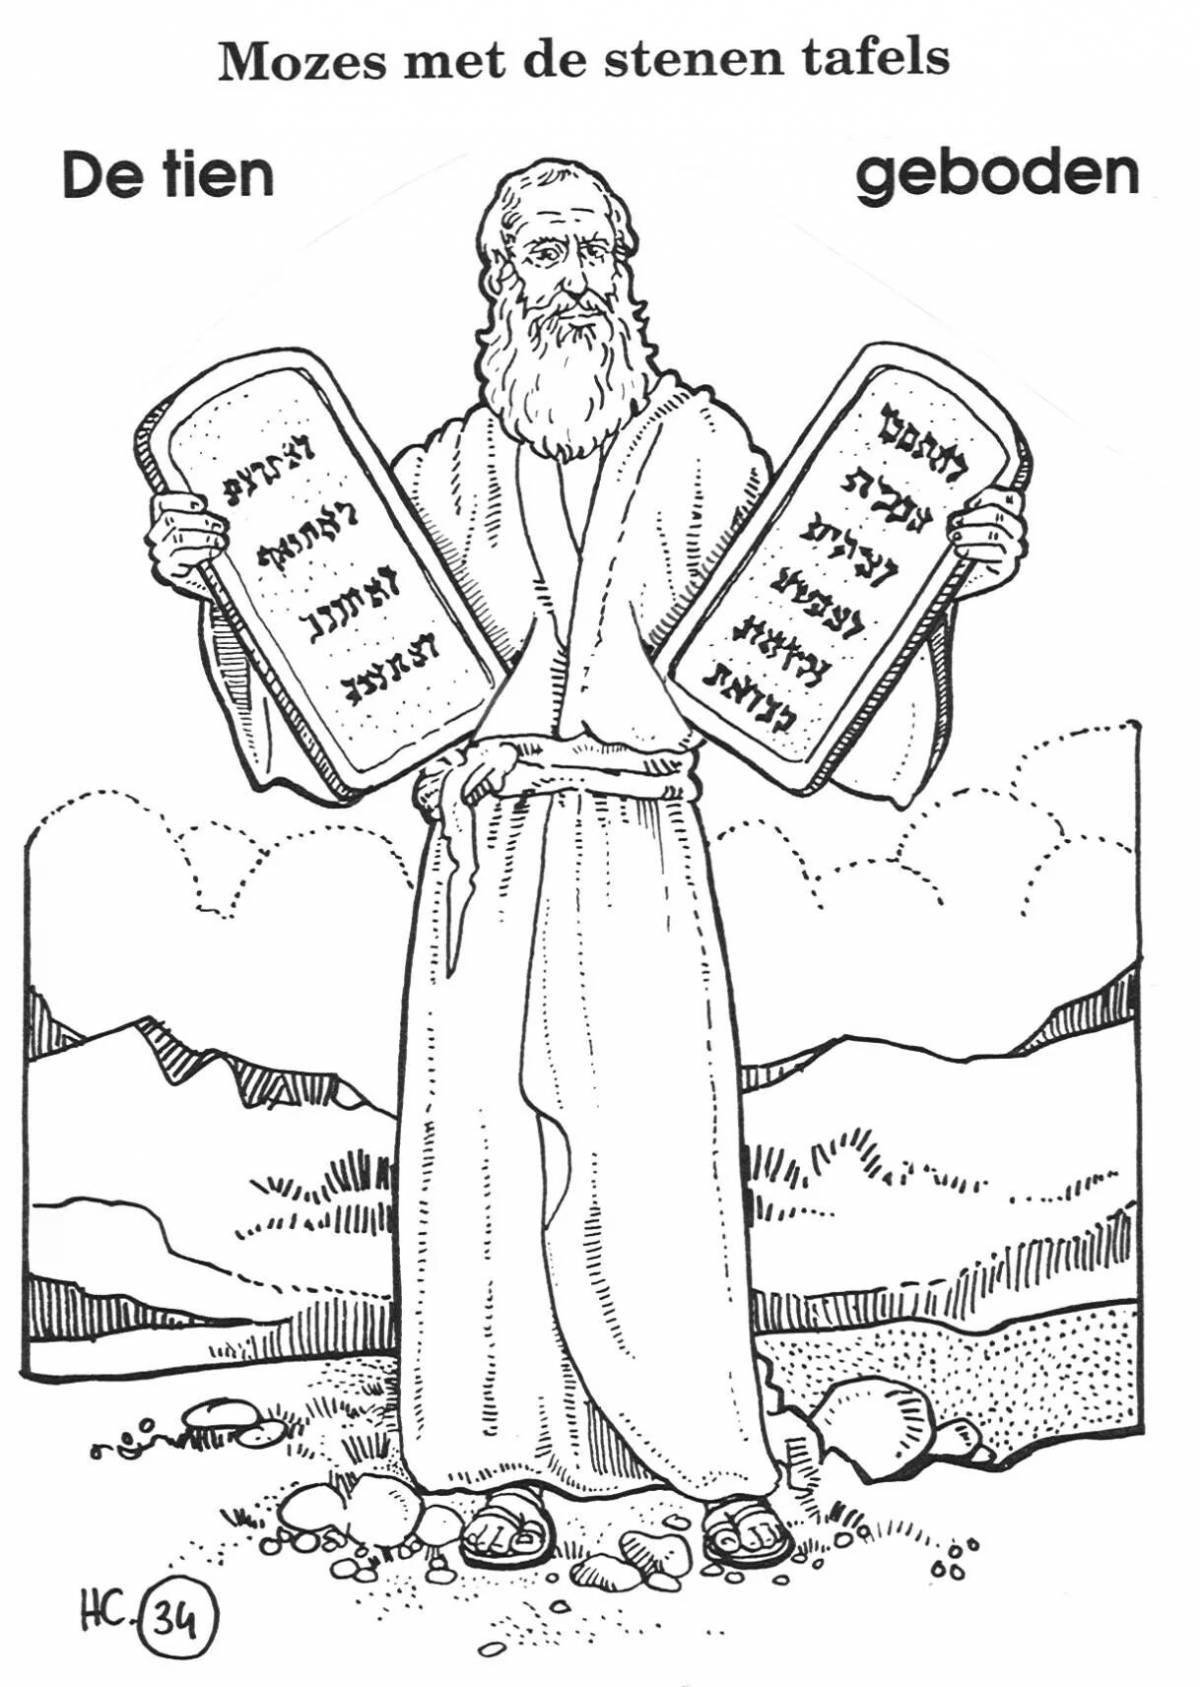 Great 10 commandments coloring book